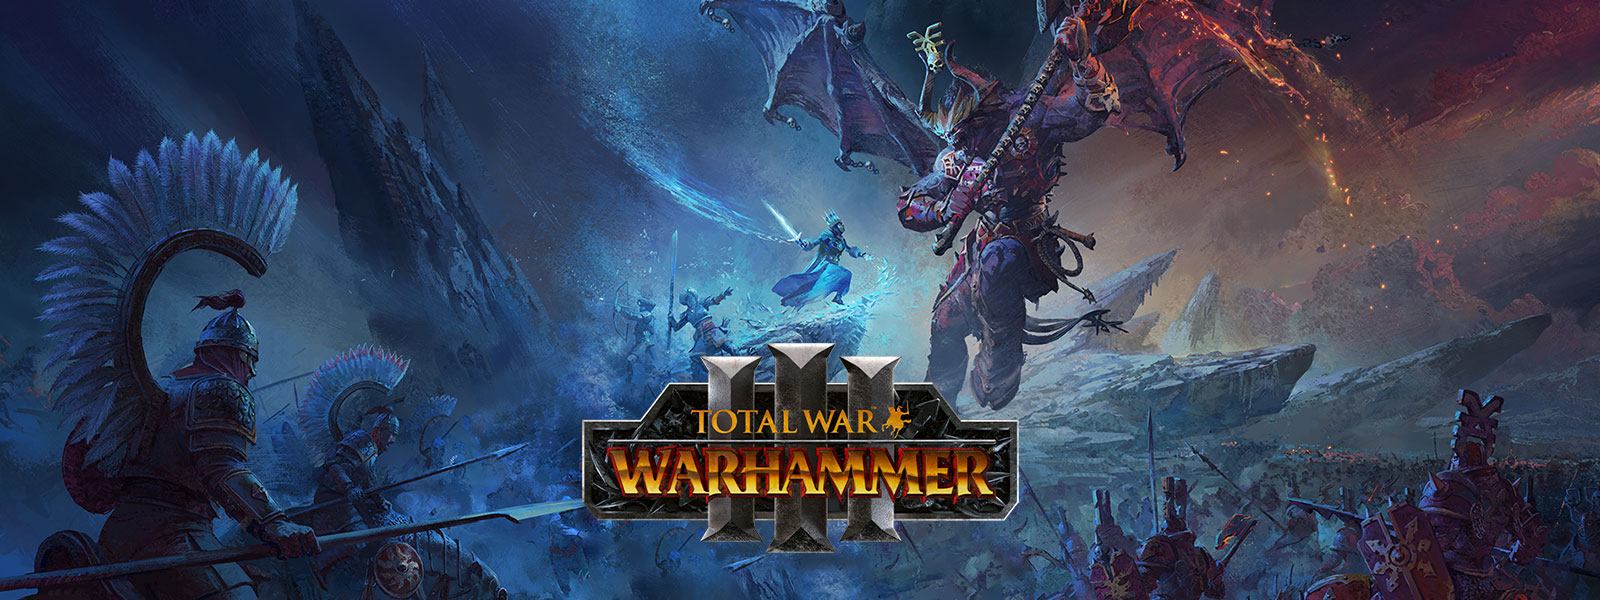 Total War Warhammer 3, un sorcier des glaces affronte un démon à lʼapparence dʼun dragon géant au-dessus dʼun champ de bataille.